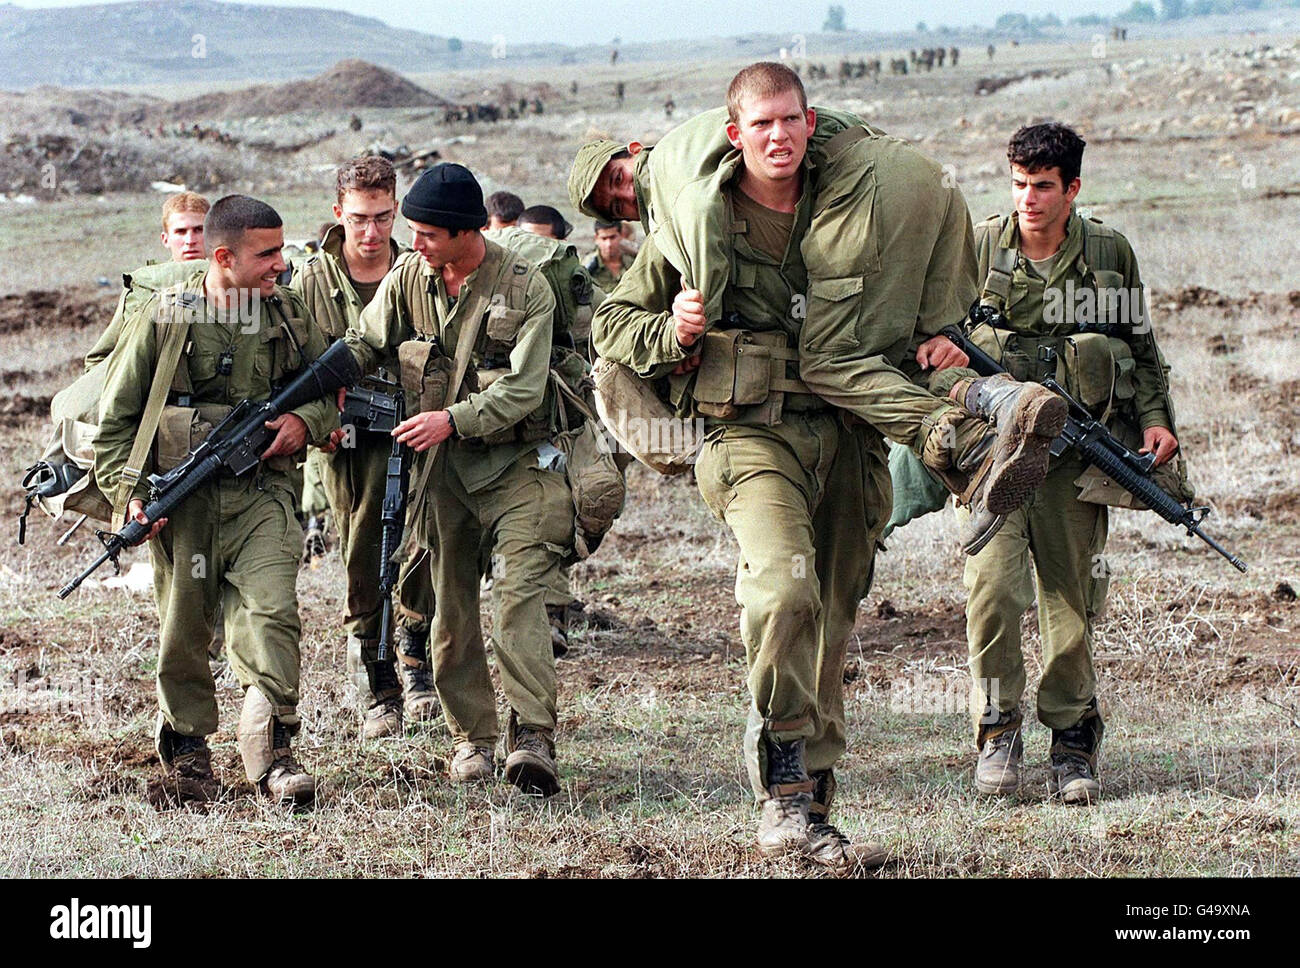 Am letzten Tag der Trainingsmanöver der Givaati-Brigade, dem 06. November 1997, führt eine Gruppe israelischer Soldaten einen schlammigen Hügel hinauf, der einen „verwundeten“ Soldaten auf den Golanhöhen trägt. Syrien sagte diese Woche, dass es in drei Monaten einen Friedensvertrag mit Israel erreichen könnte, wenn Israel zustimmte, den 1967 besetzten und später annektierten Golan zurückzugeben. Die Friedensverhandlungen zwischen Israel und Syrien wurden seit über einem Jahr ausgesetzt. Stockfoto